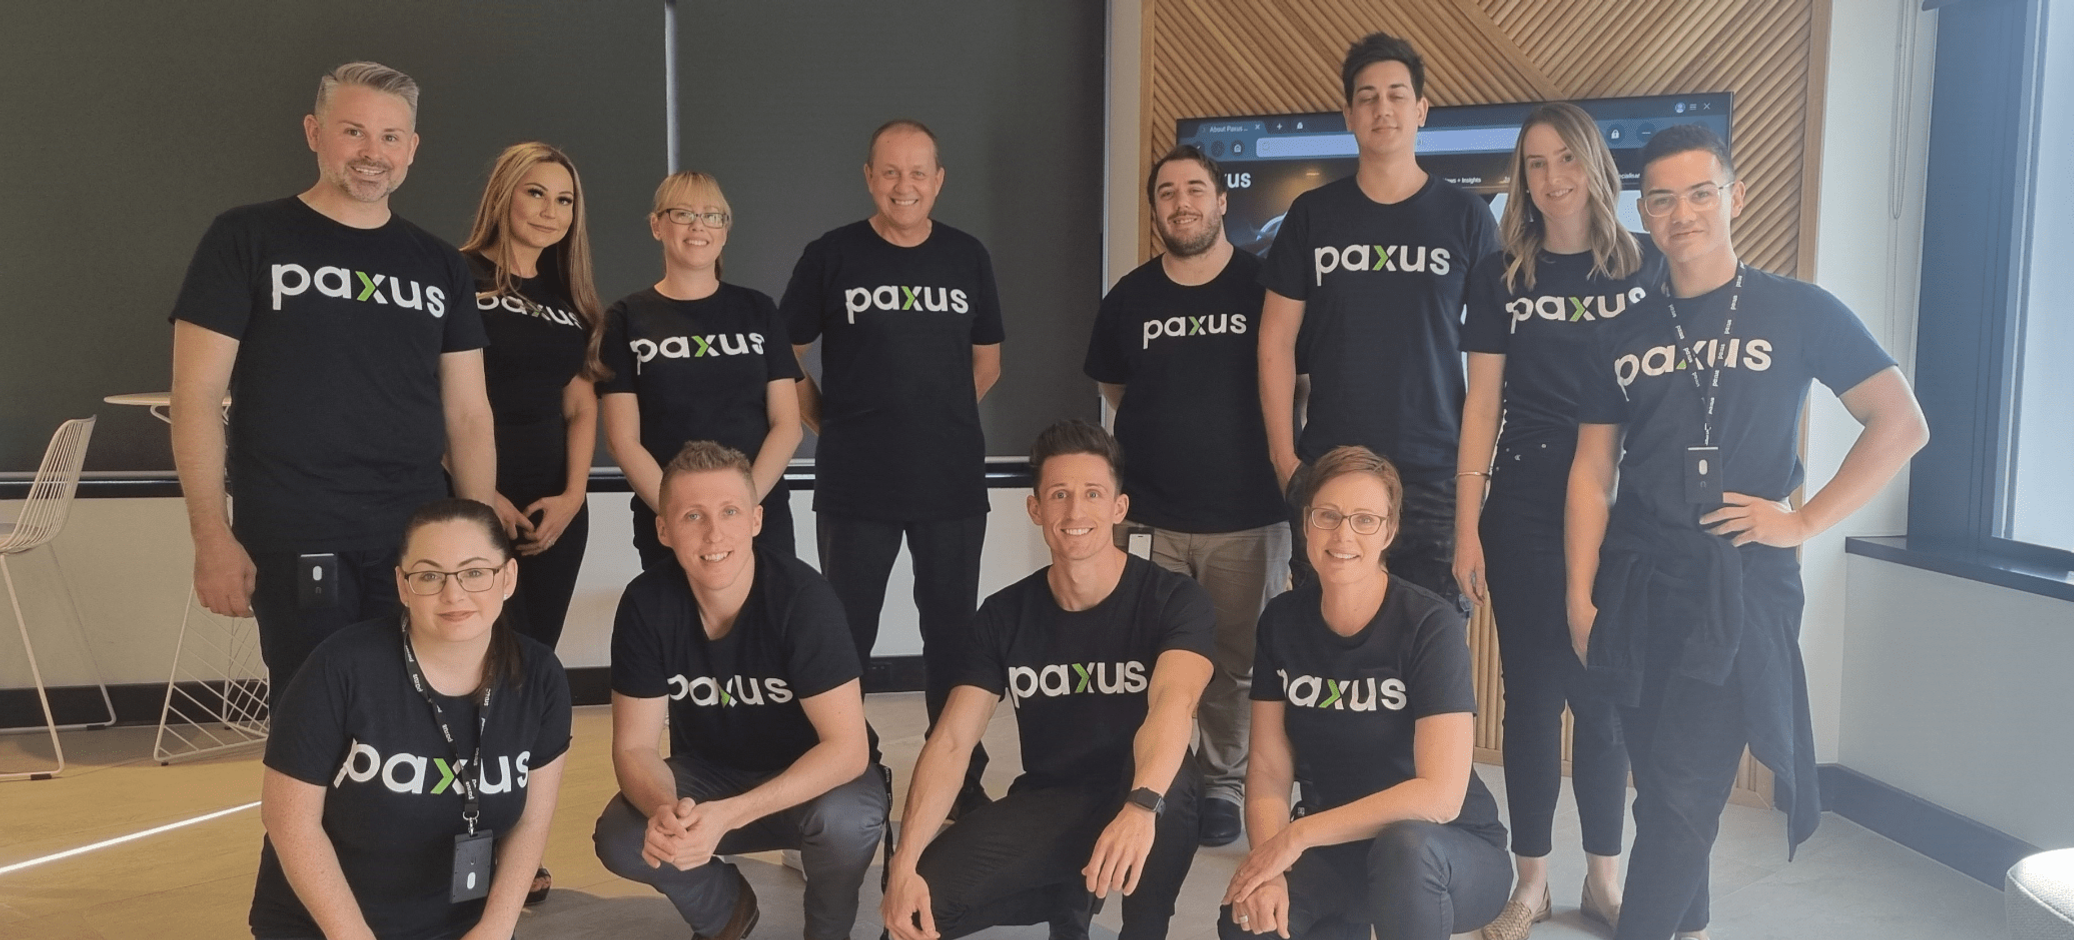 Paxus Recruitment Team Photo